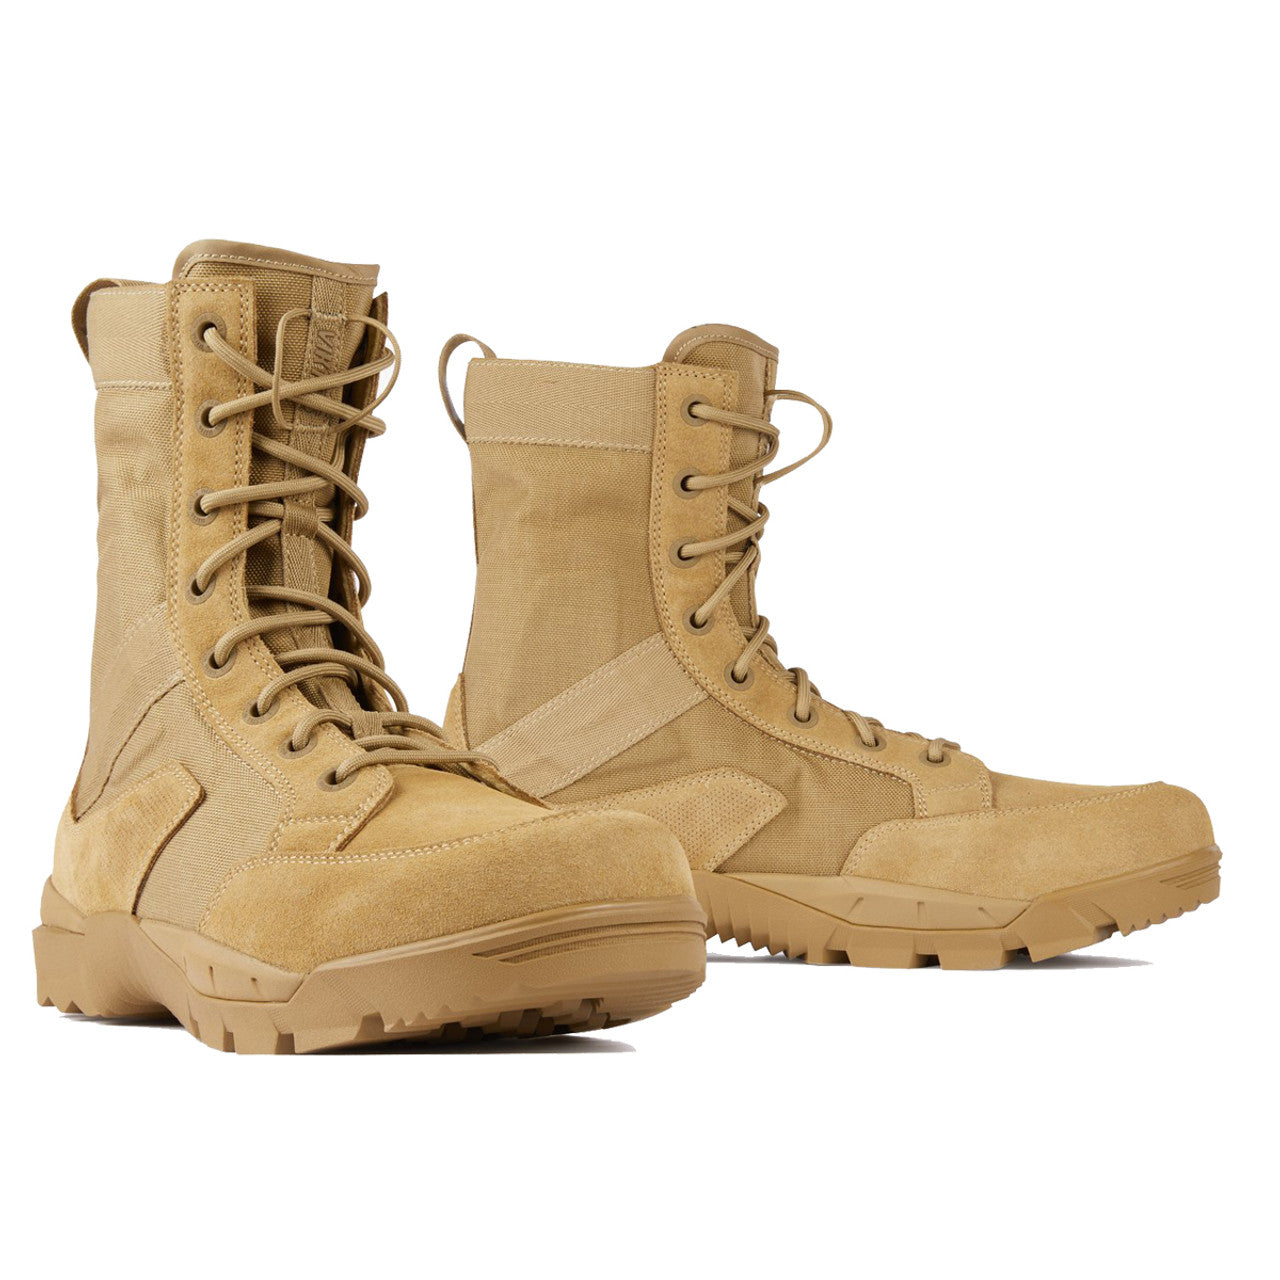 Viktos Johnny Combat SF Boots Coyote Tactical Distributors Ltd New Zealand